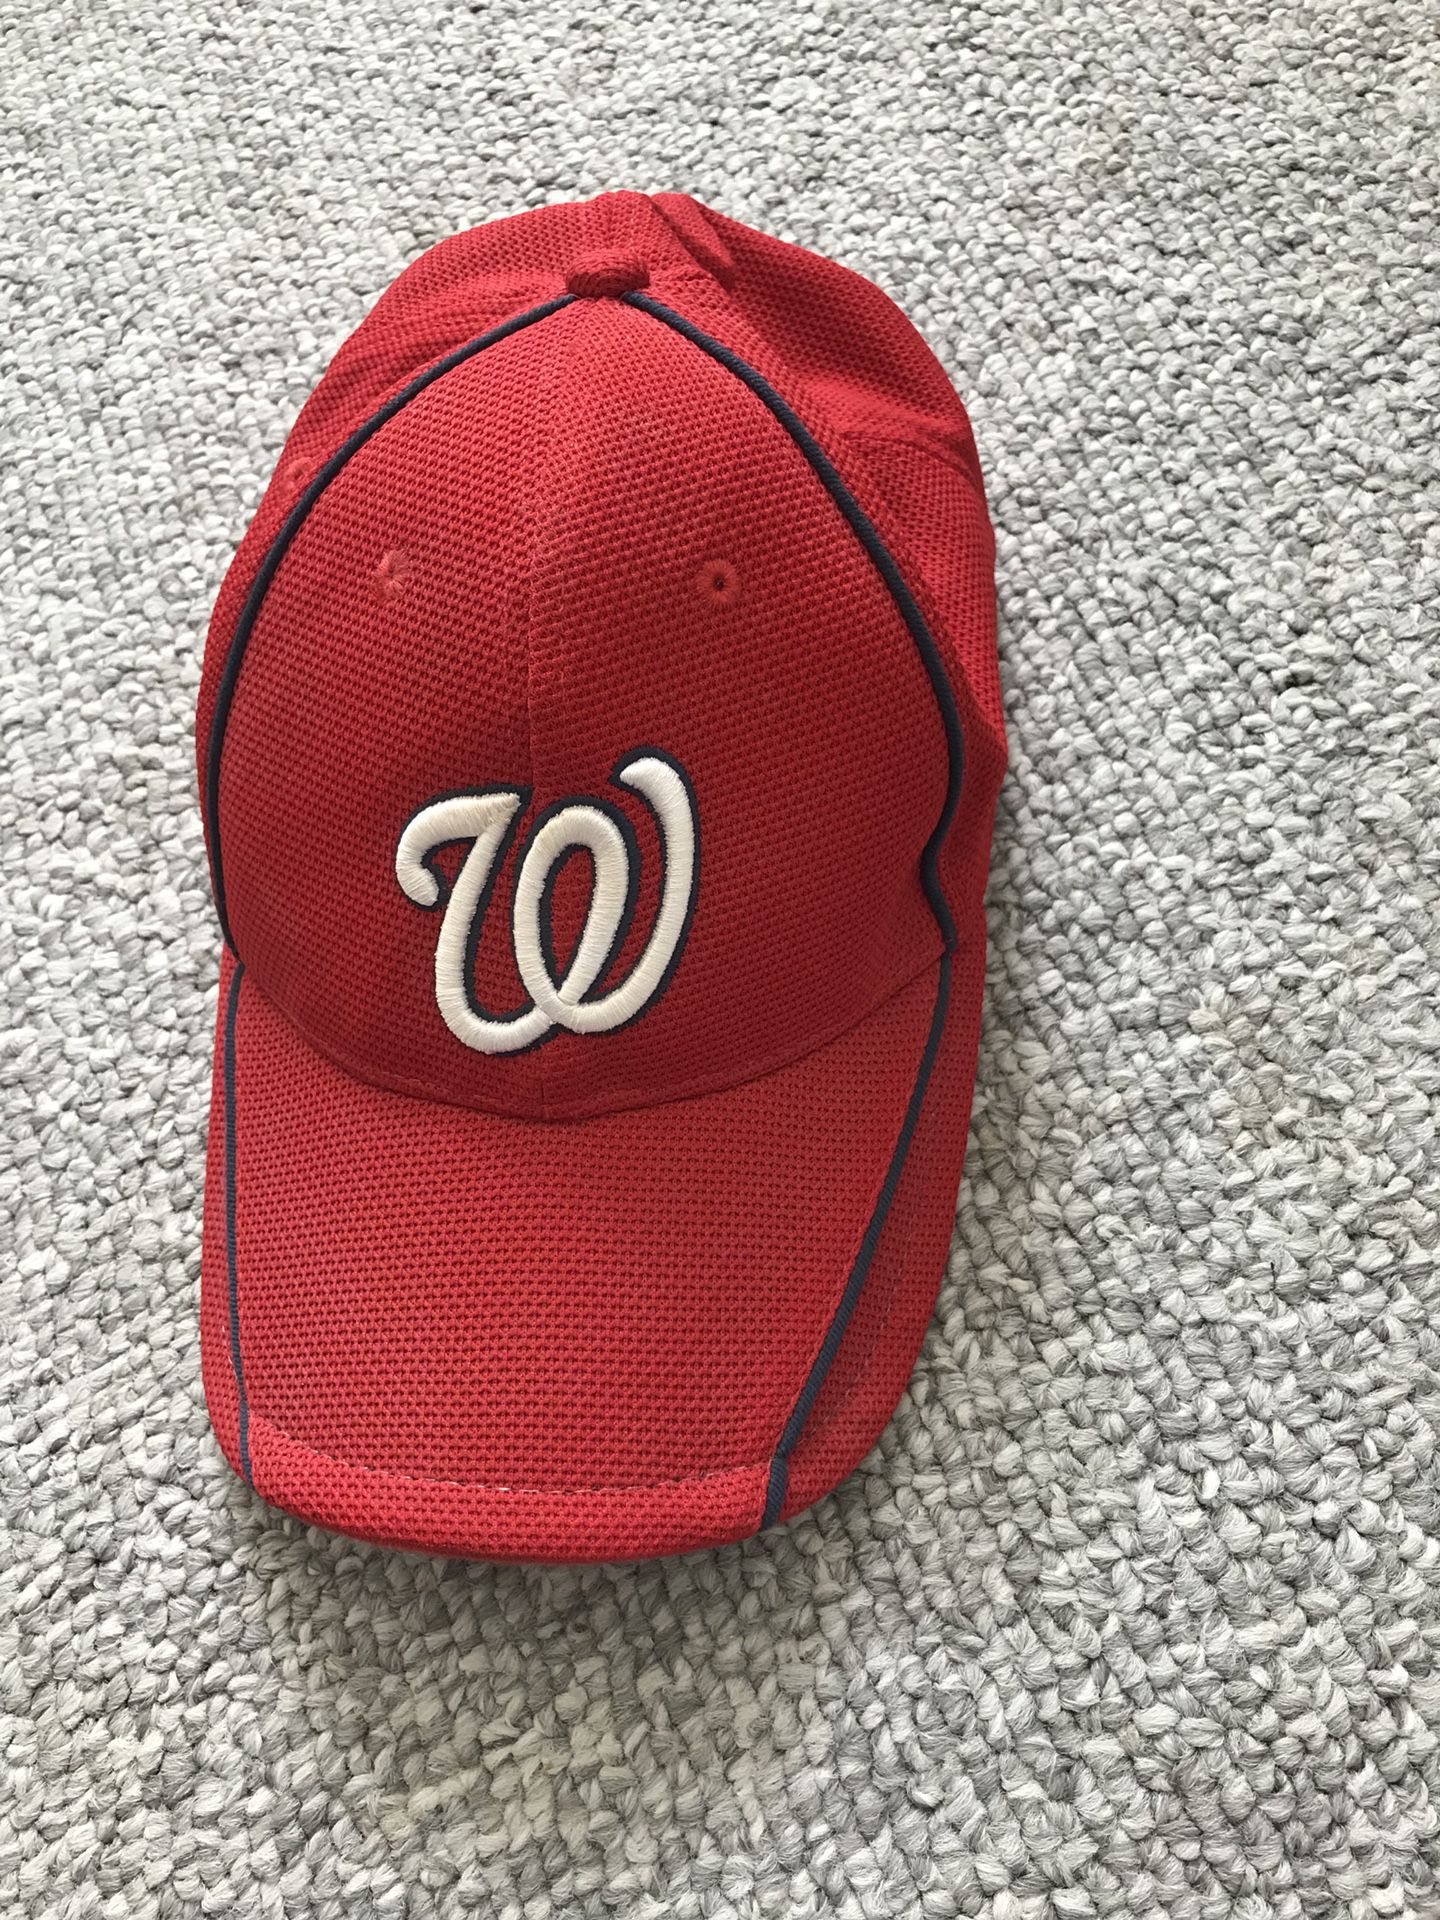 Washington Nationals Hat